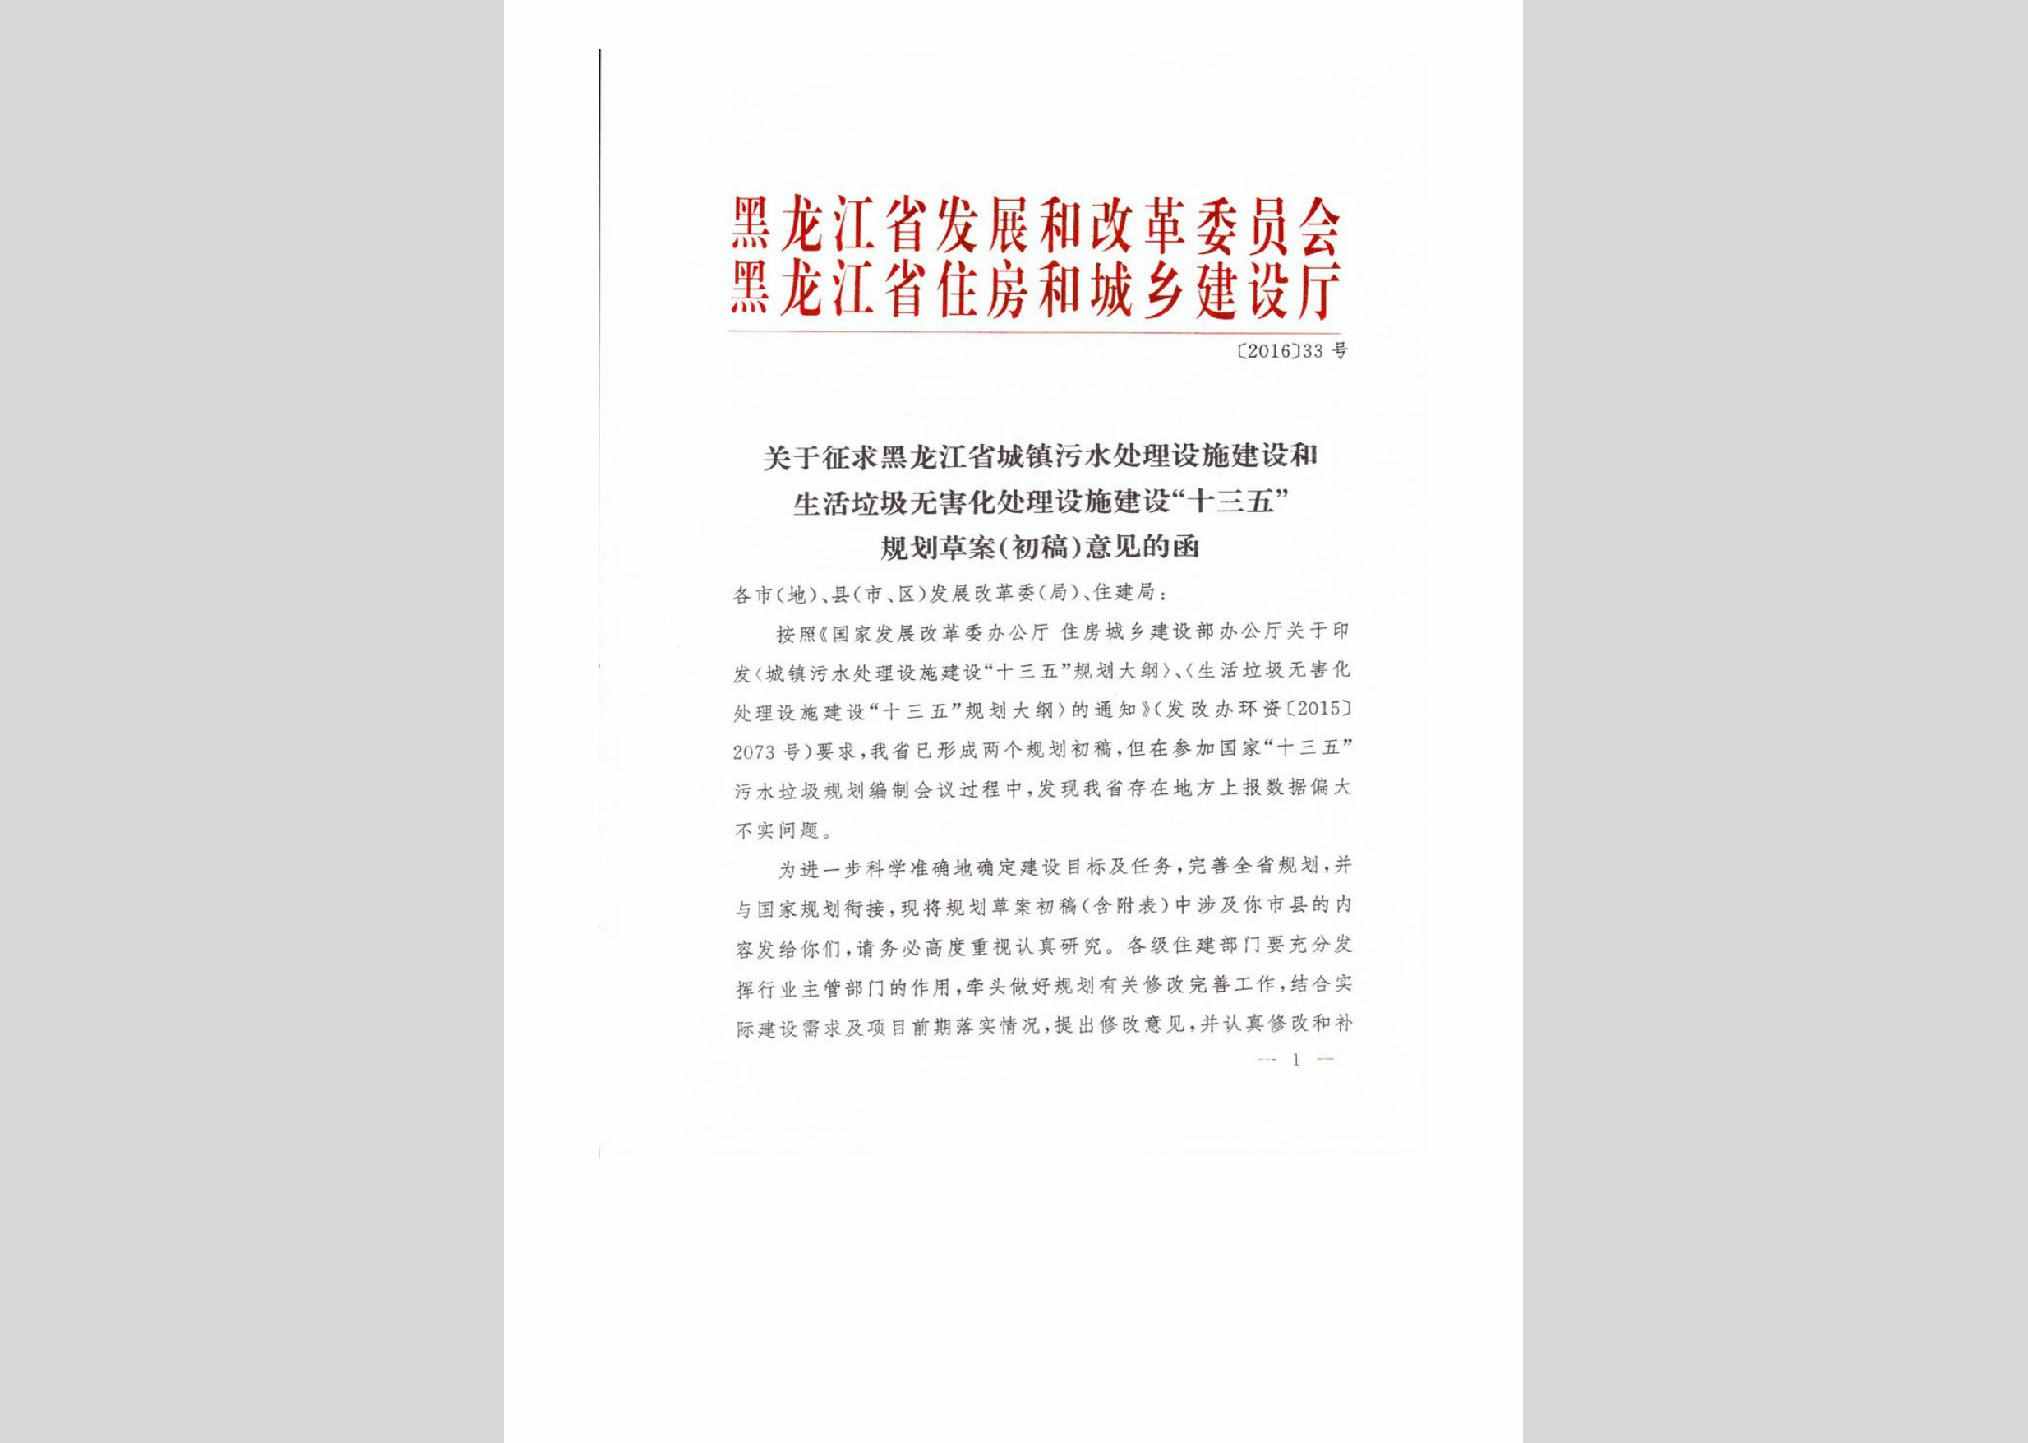 黑建函[2016]33号：关于征求黑龙江省城镇污水处理设施建设和生活垃圾无害化处理设施建设“十三五”规划草案（初稿）意见的函